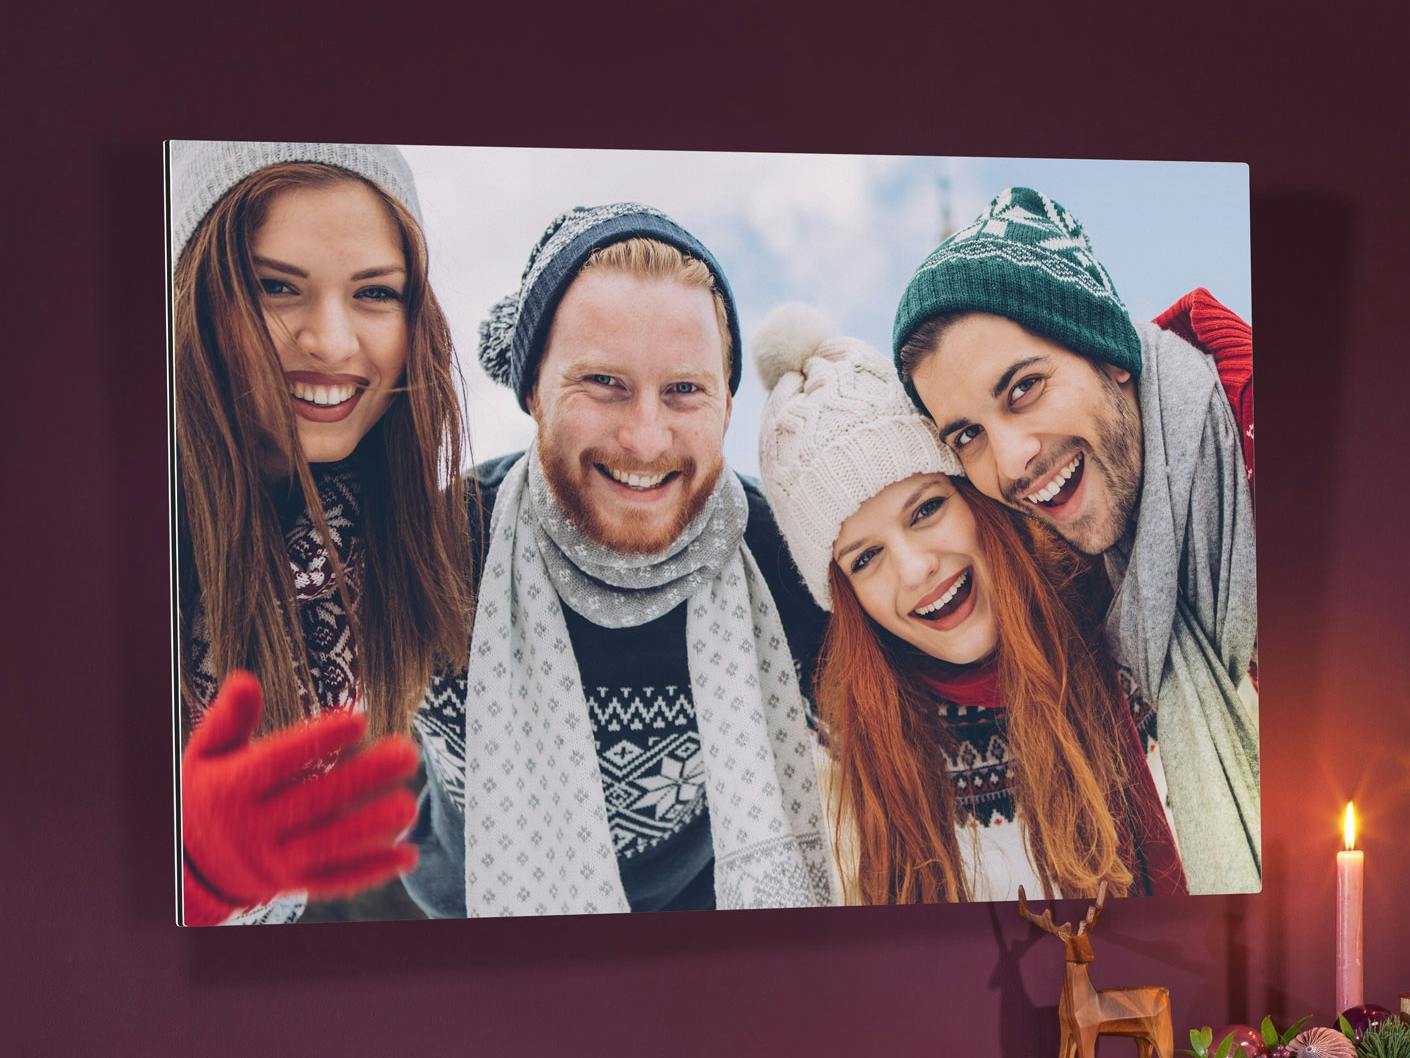 Tableau photo alu avec une photo d'un groupe d'amis dans une ambiance hivernale